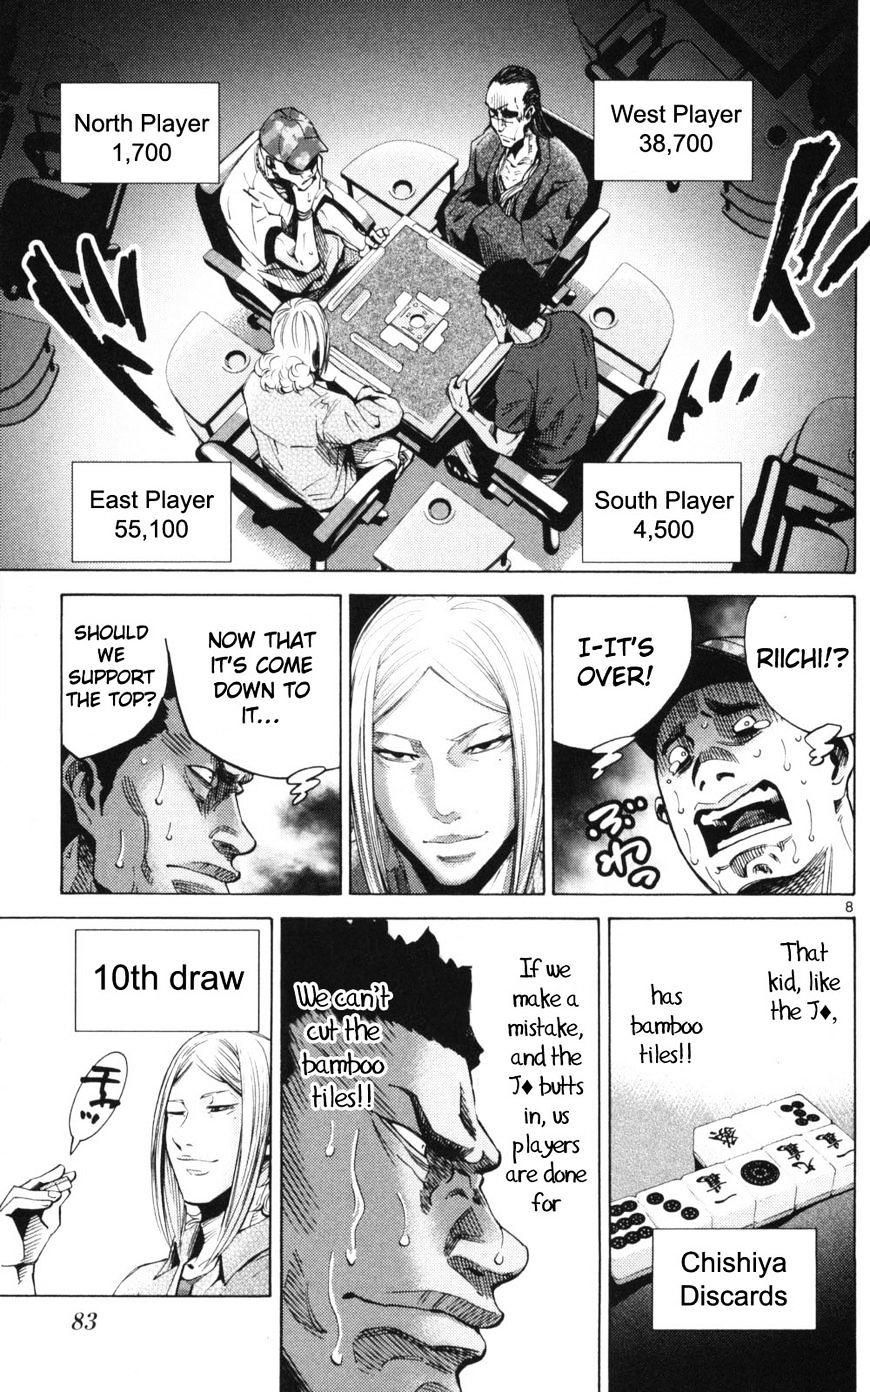 Imawa No Kuni No Alice Chapter 51.1 : Side Story 6 - King Of Diamonds (1) page 8 - Mangakakalot